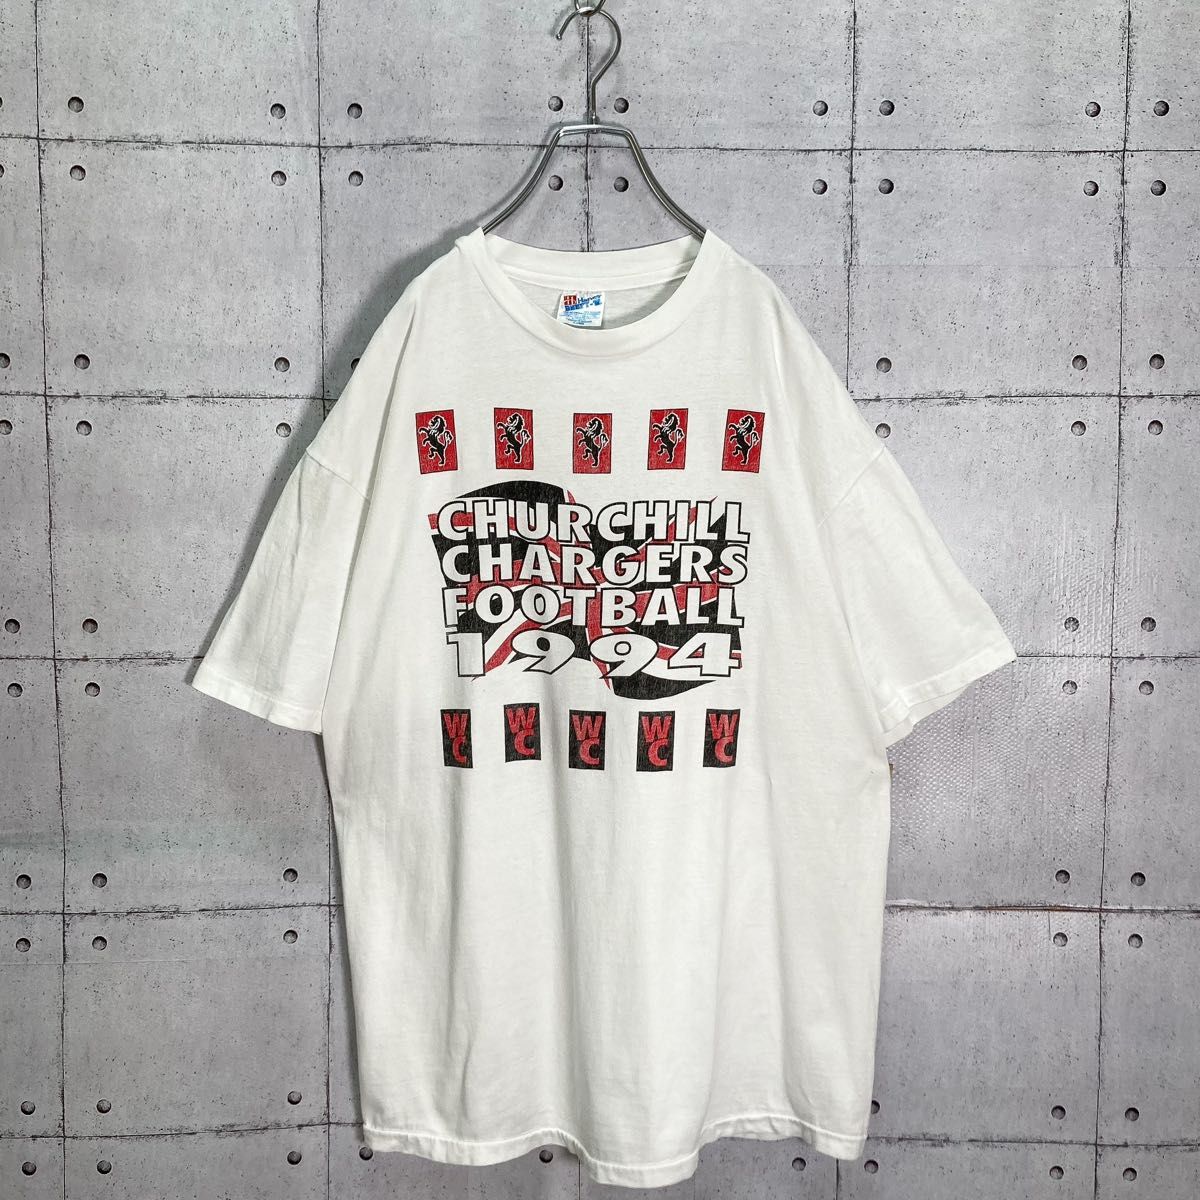 【レアデザイン】90s VINTAGE 両面プリント 半袖Tシャツ USA製